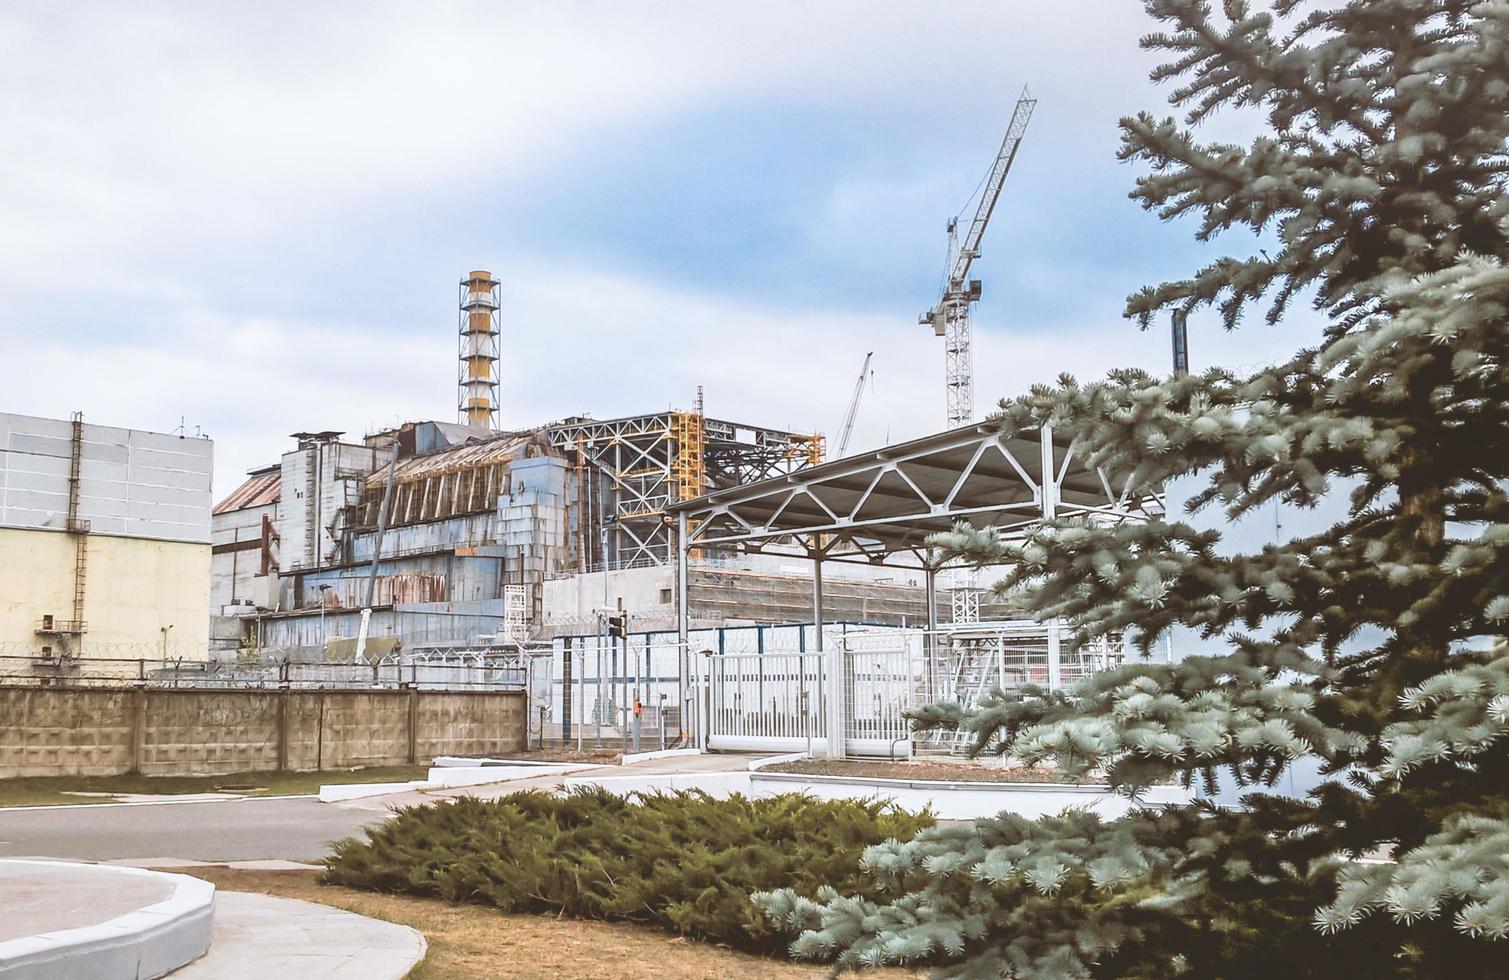 pripyat, ucraina, 2021 - quarta unità di potenza della centrale nucleare di Chernobyl foto